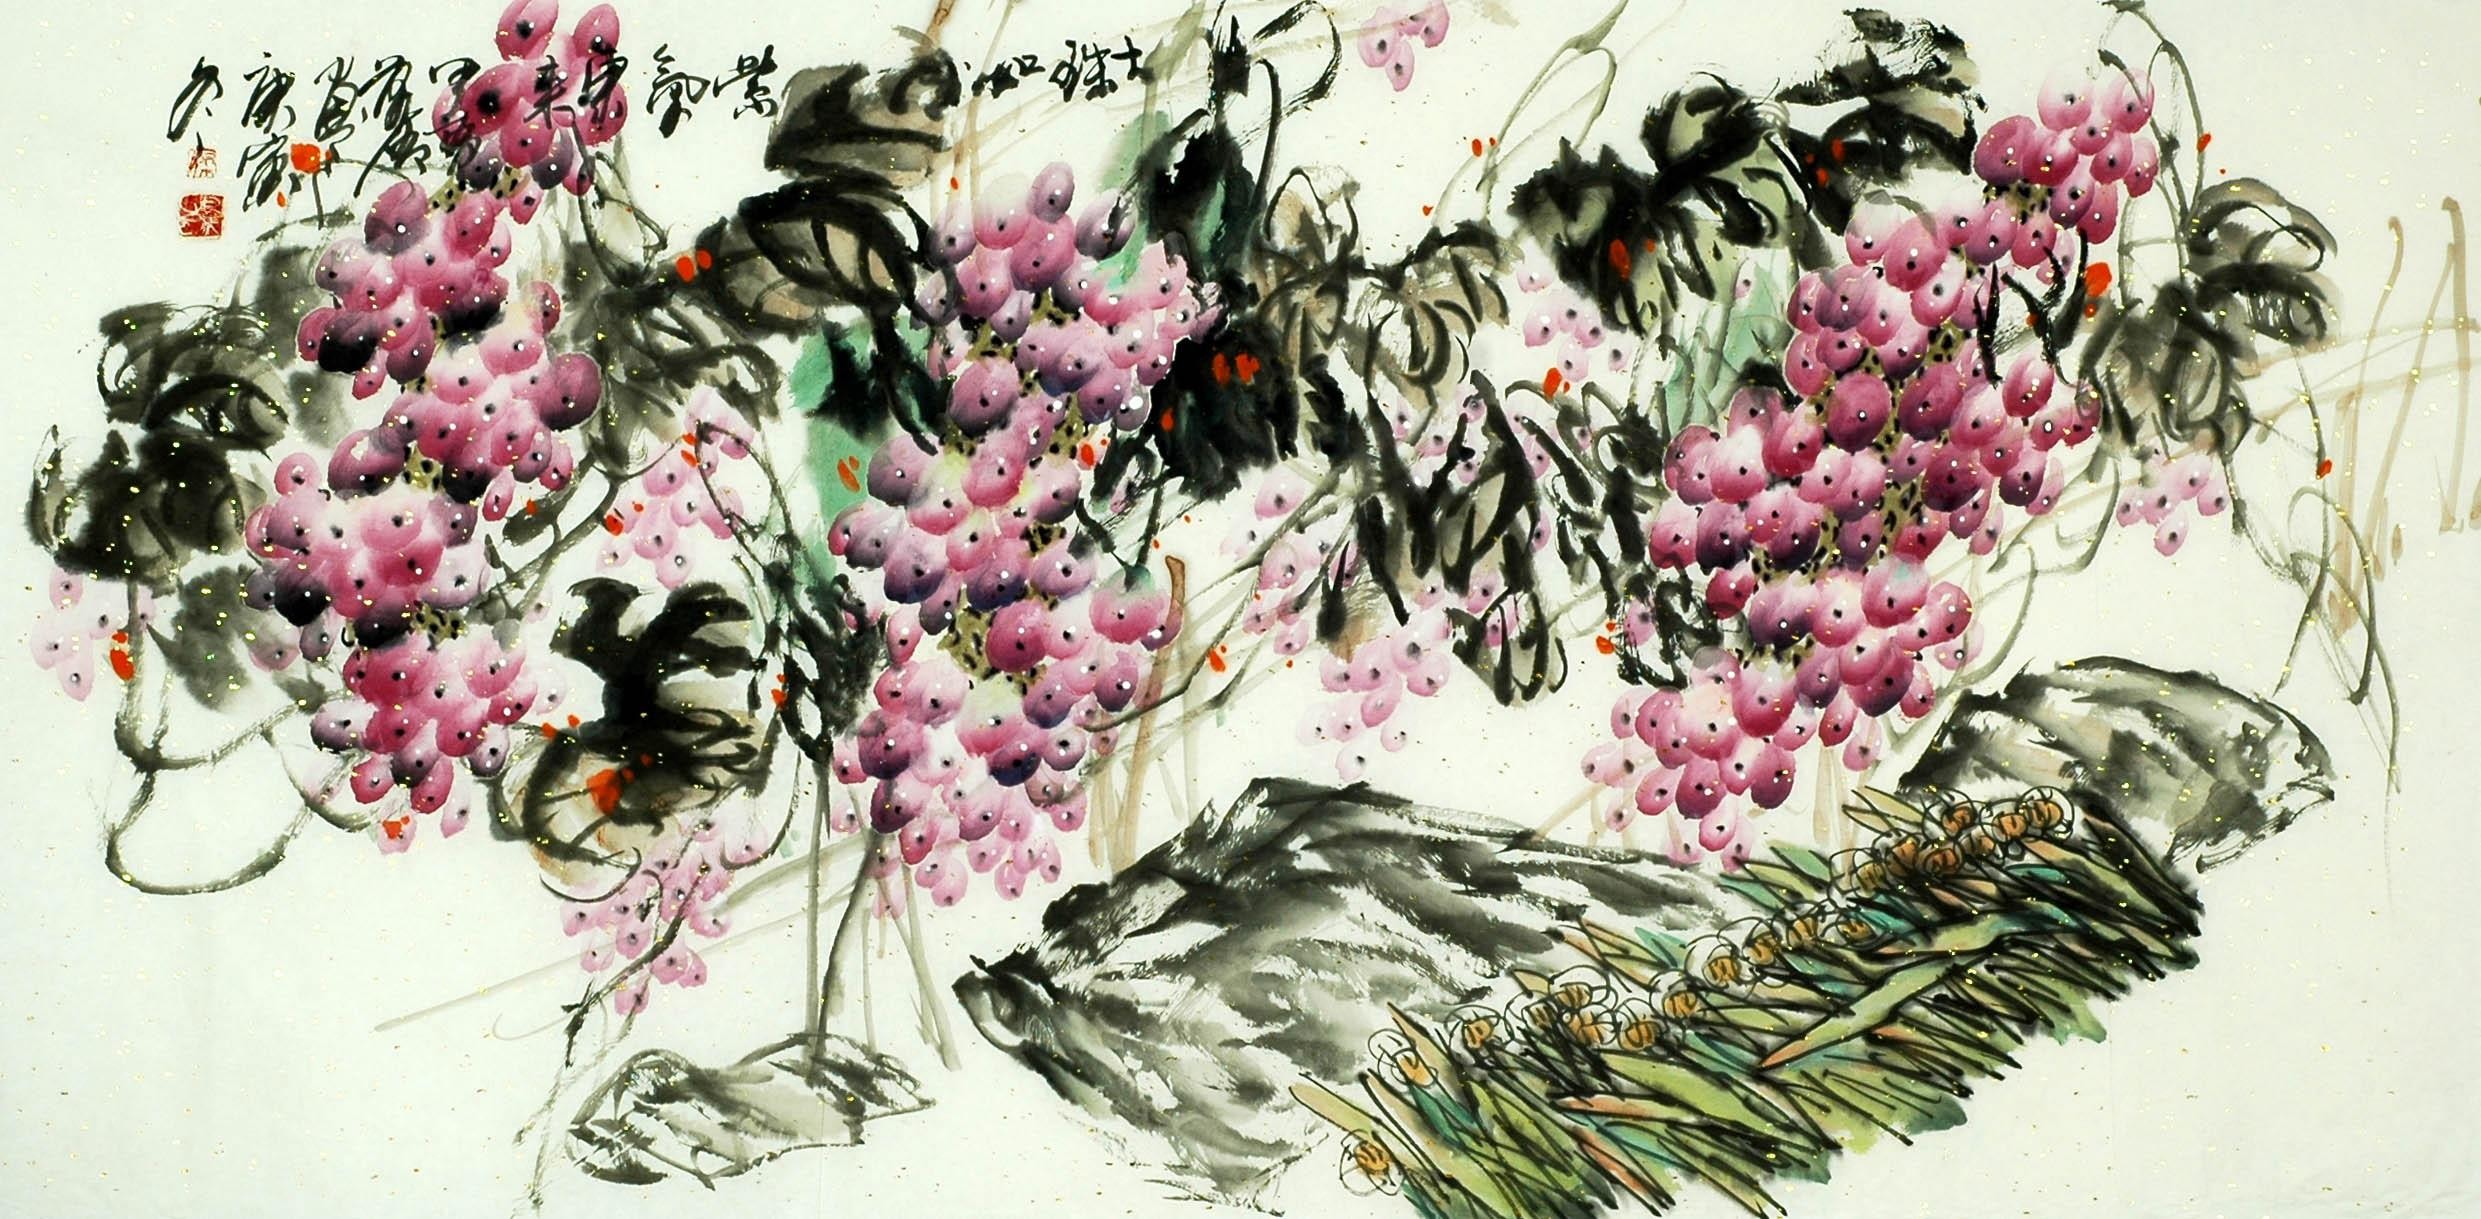 Chinese Grapes Painting - CNAG008873